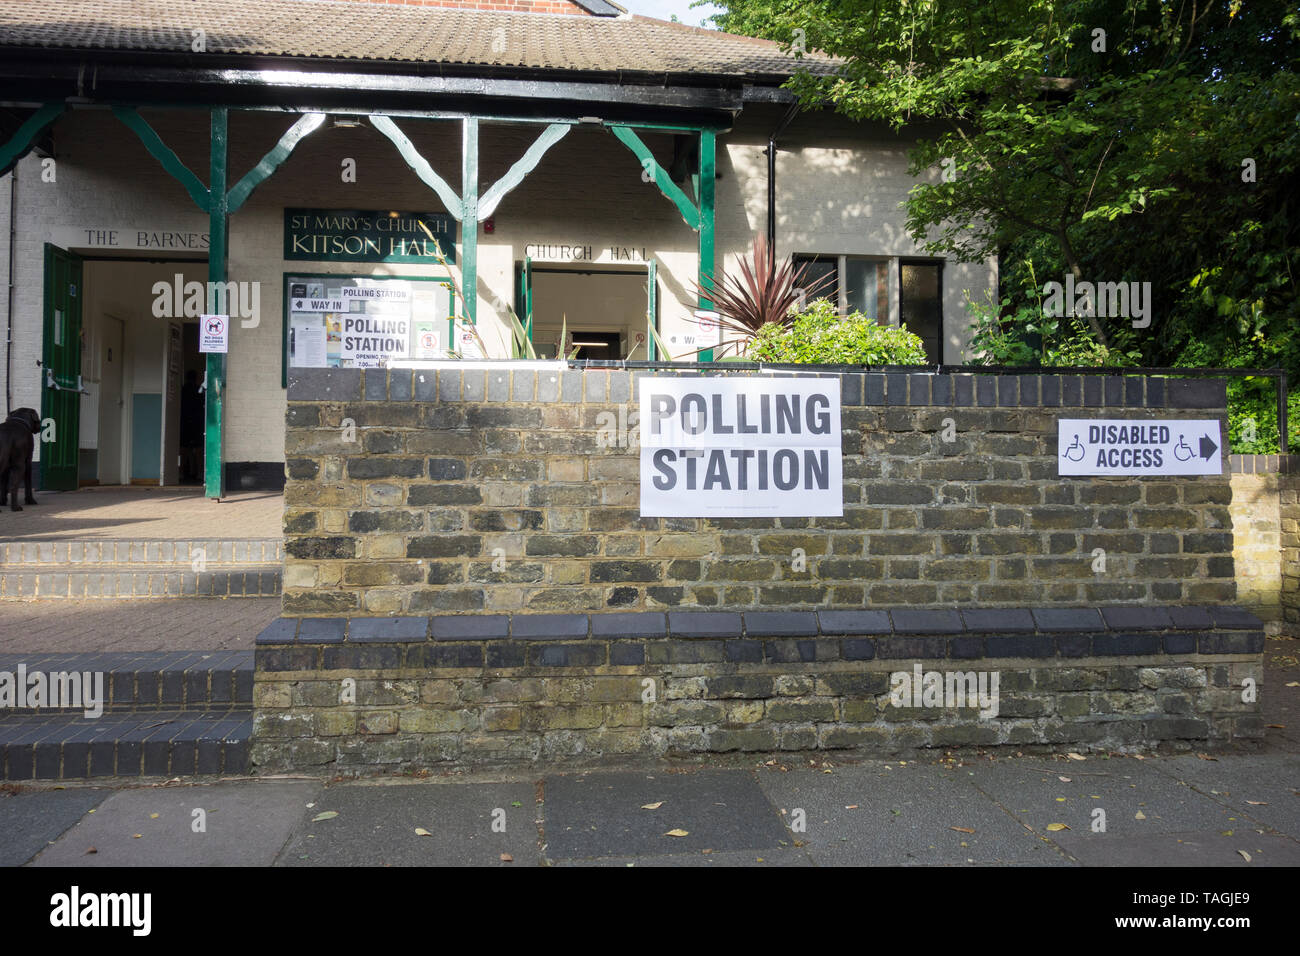 Gli elettori del Regno Unito sulle elezioni europee giornata elettorale in corrispondenza di una stazione di polling di Barnes, Richmond Upon Thames, Regno Unito Foto Stock